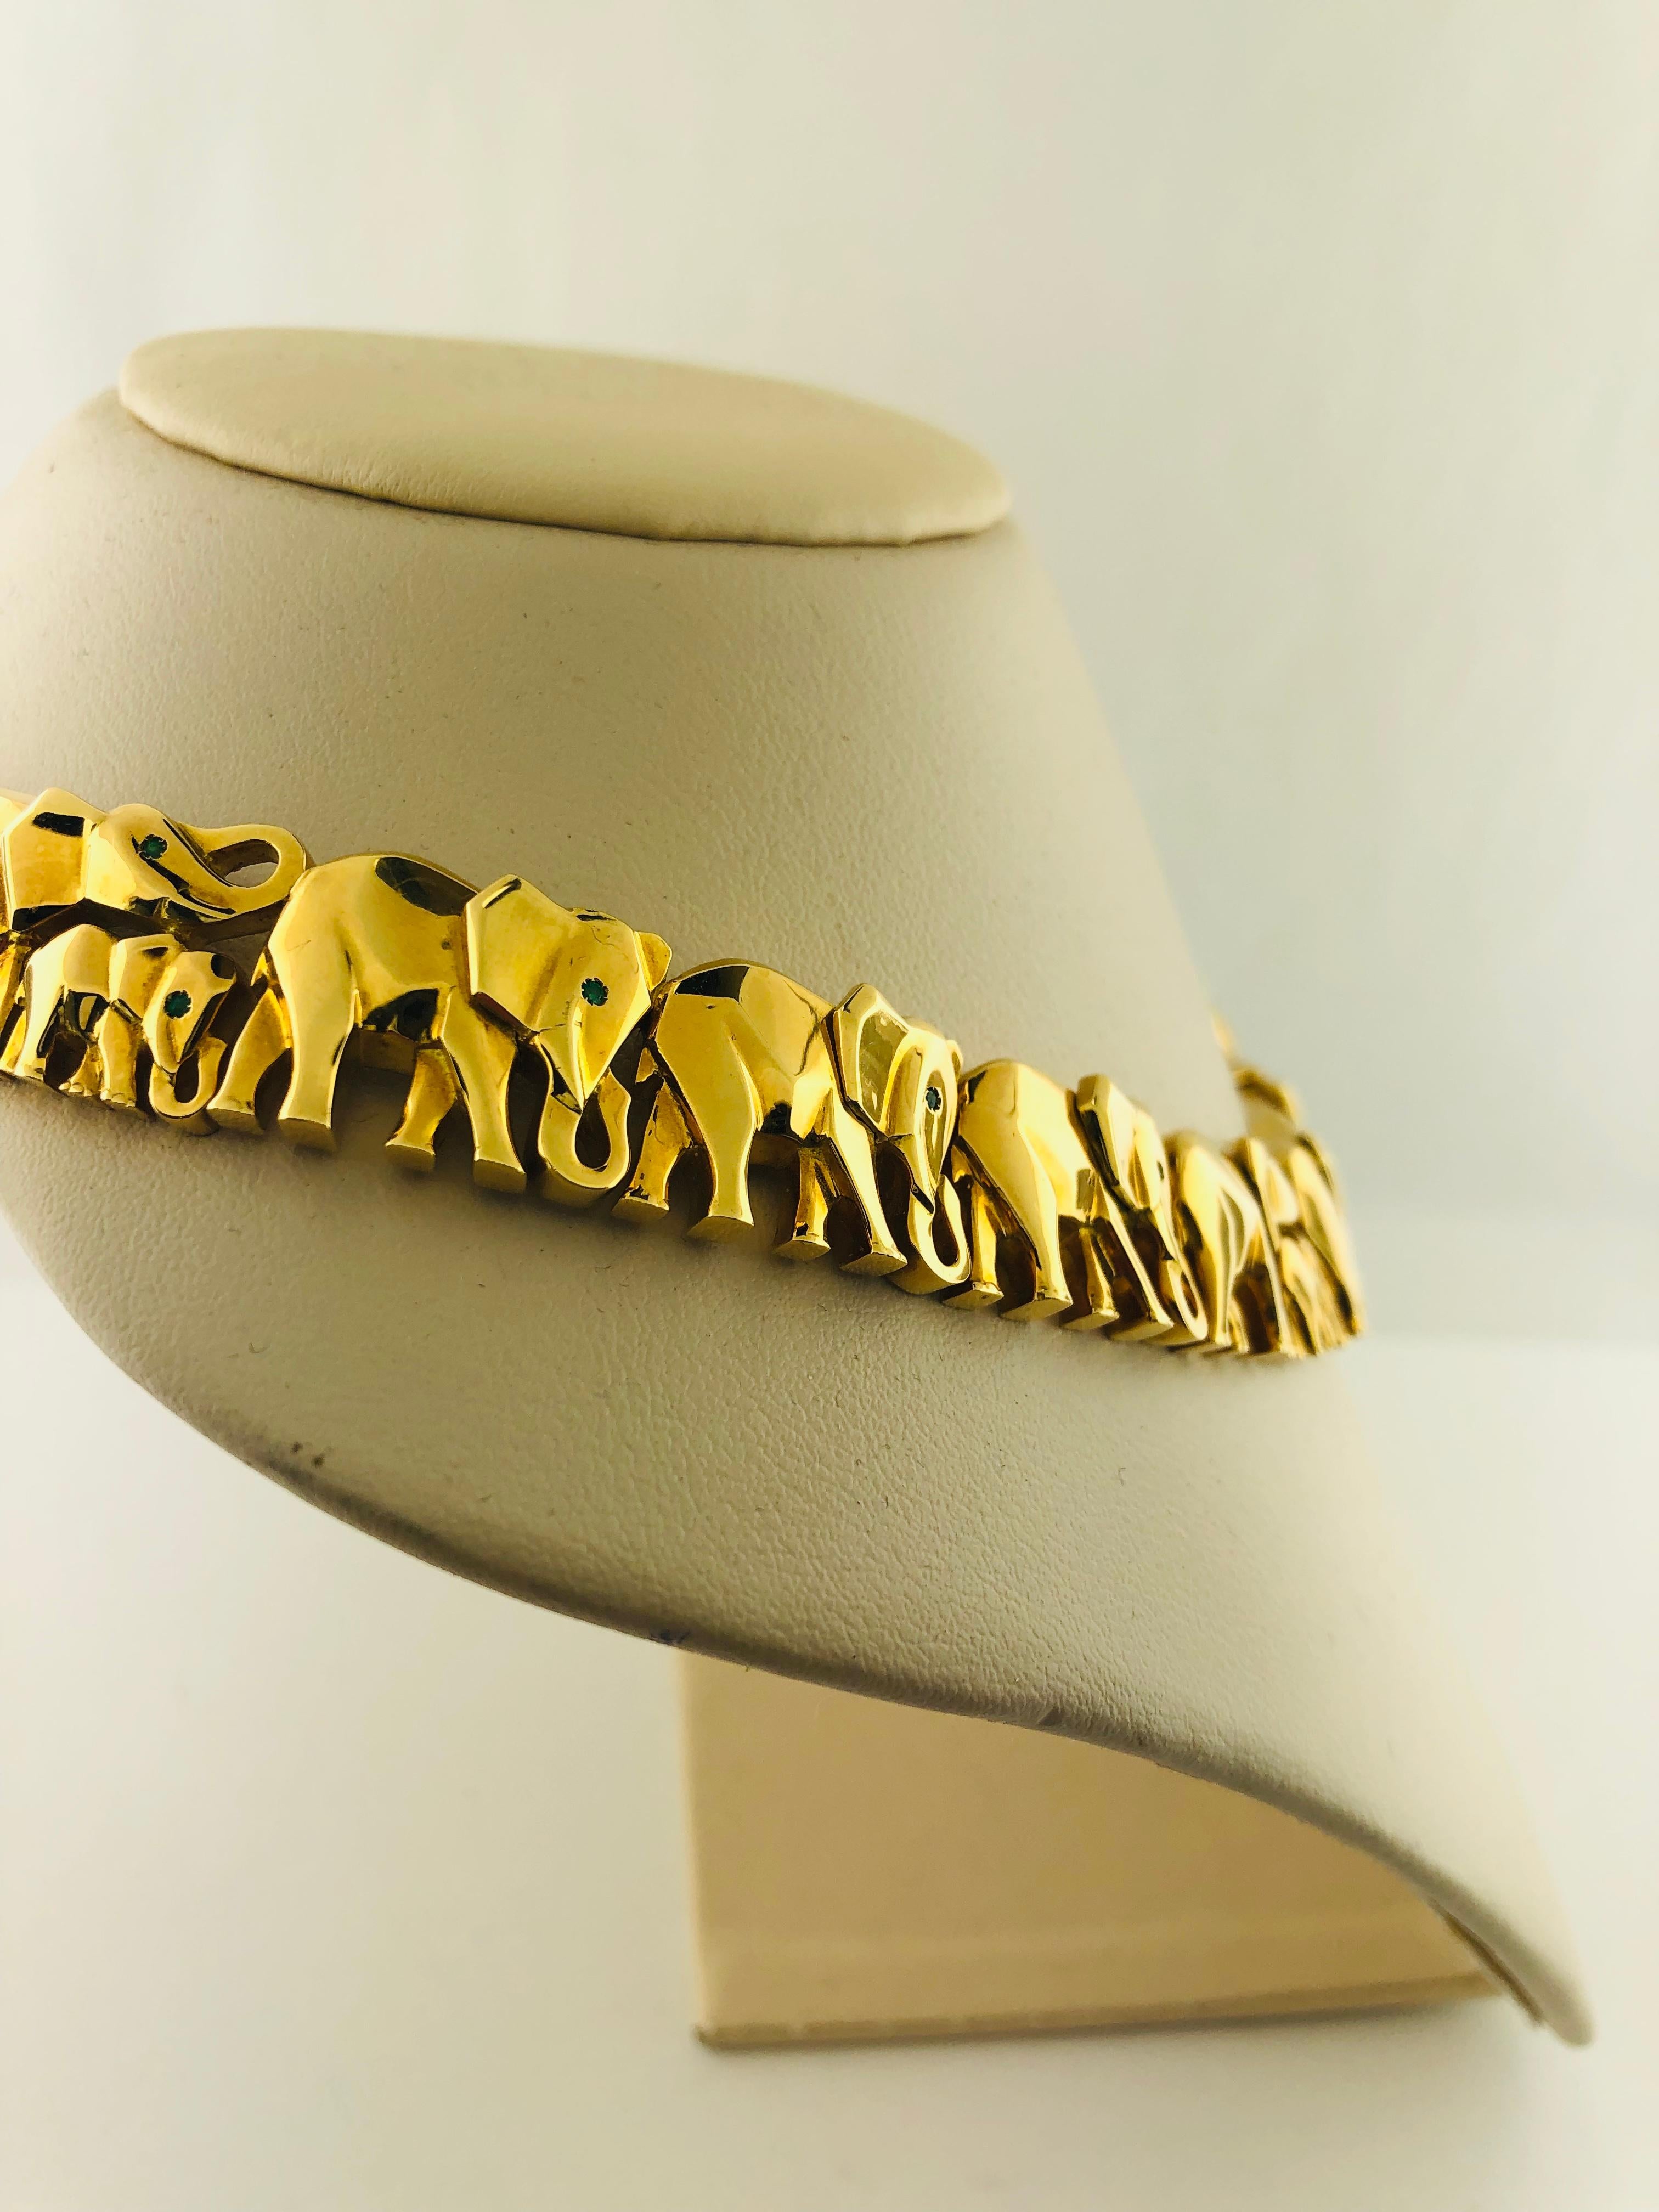 Cartier Collier éléphant en or jaune 18 carats avec yeux d'émeraude

Collier de taille Chocker 

Environ 5 pouces de large et 5 pouces de haut. 

Estampillé 